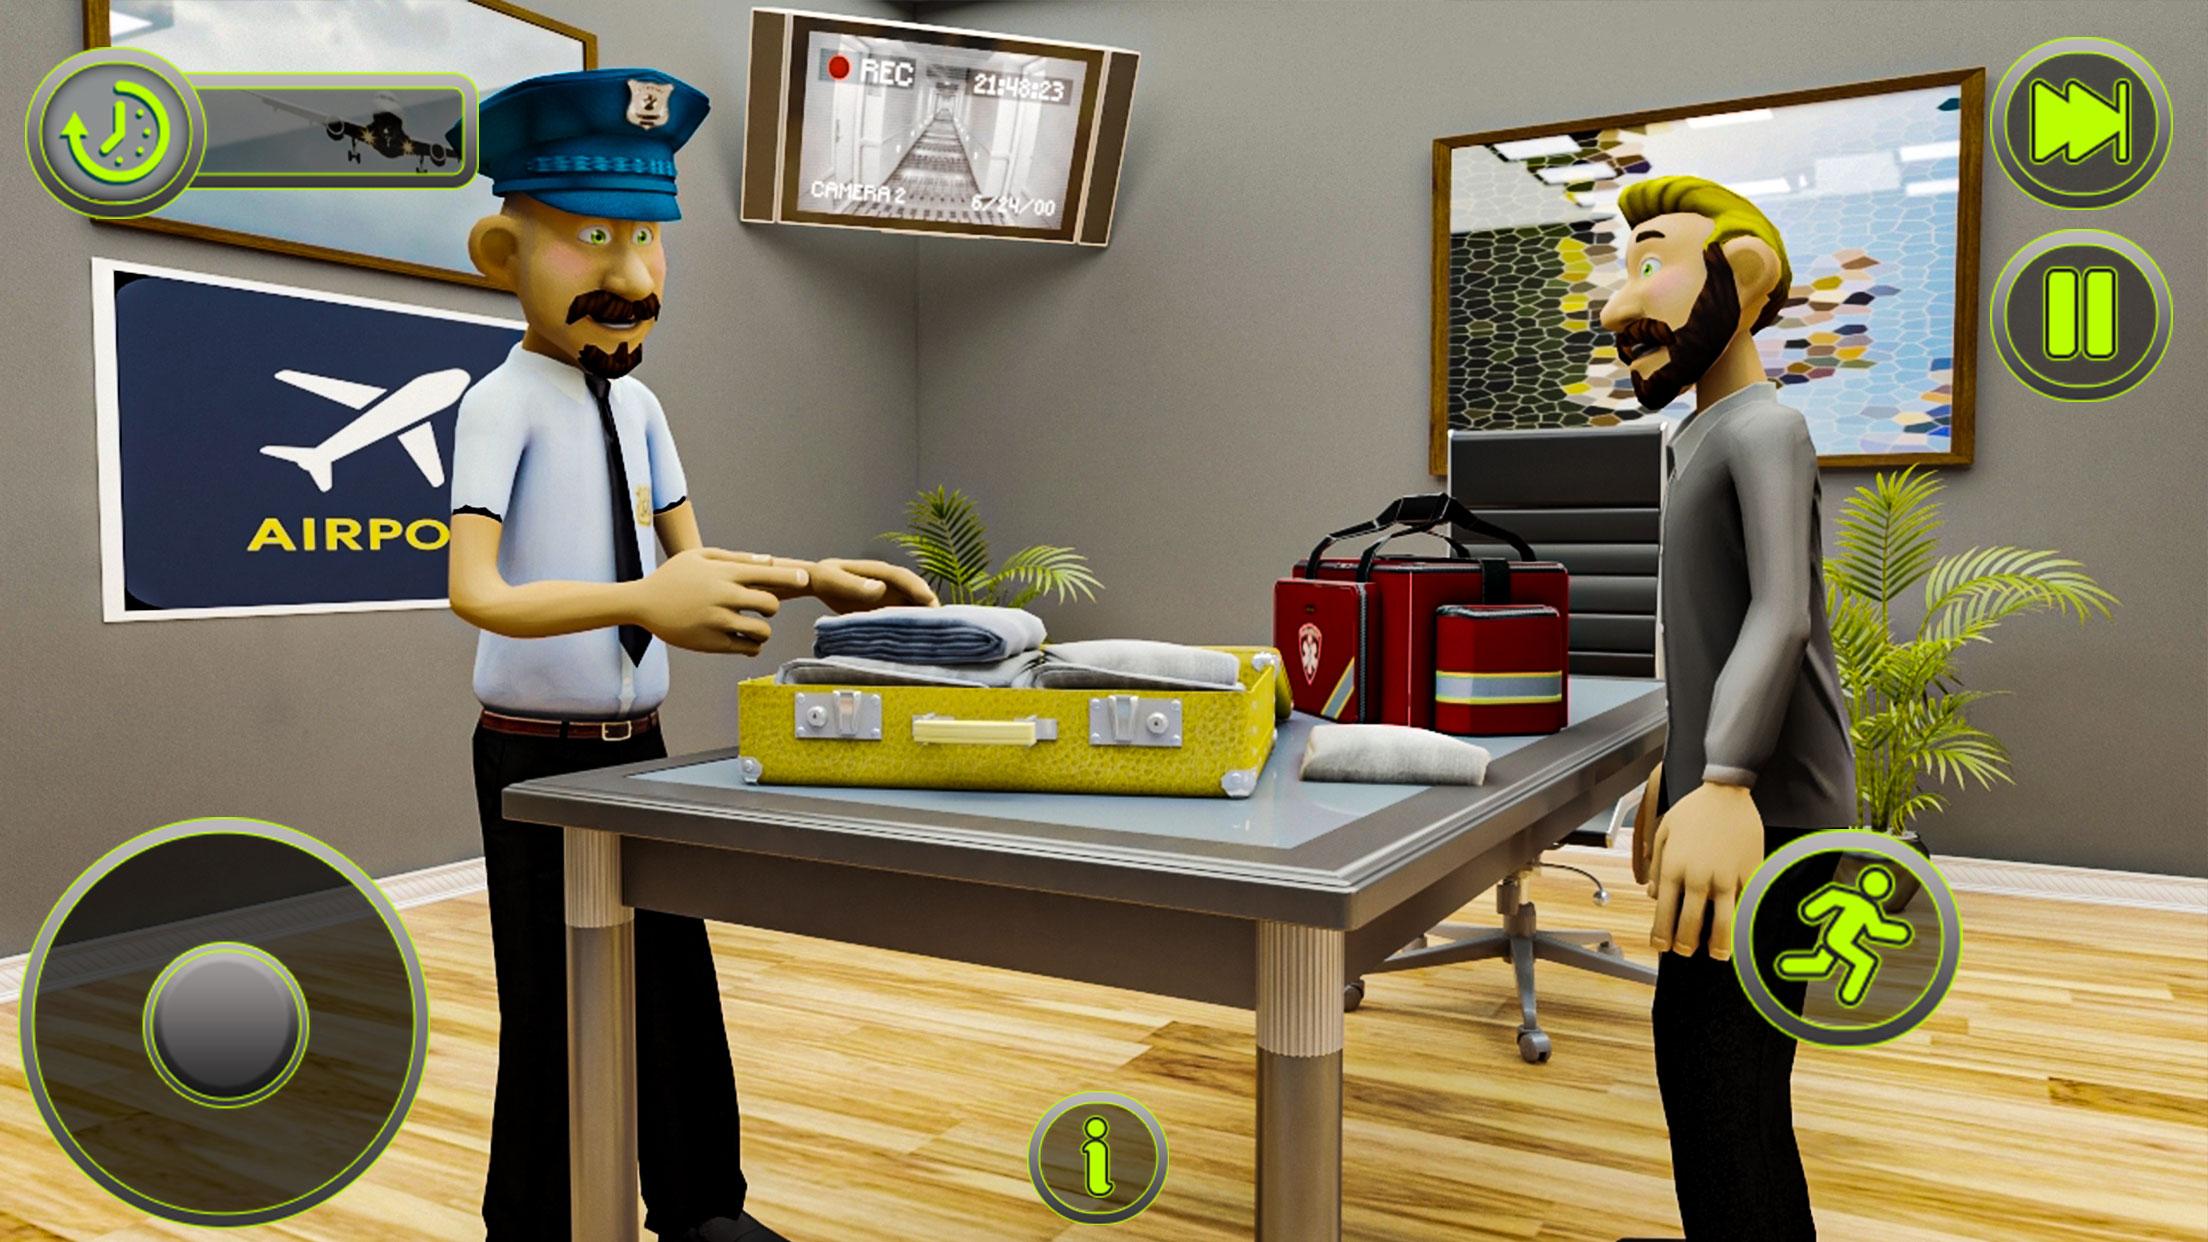 Офицеры игра. Игра про пограничный контроль. Airport Security game. Airport security игра